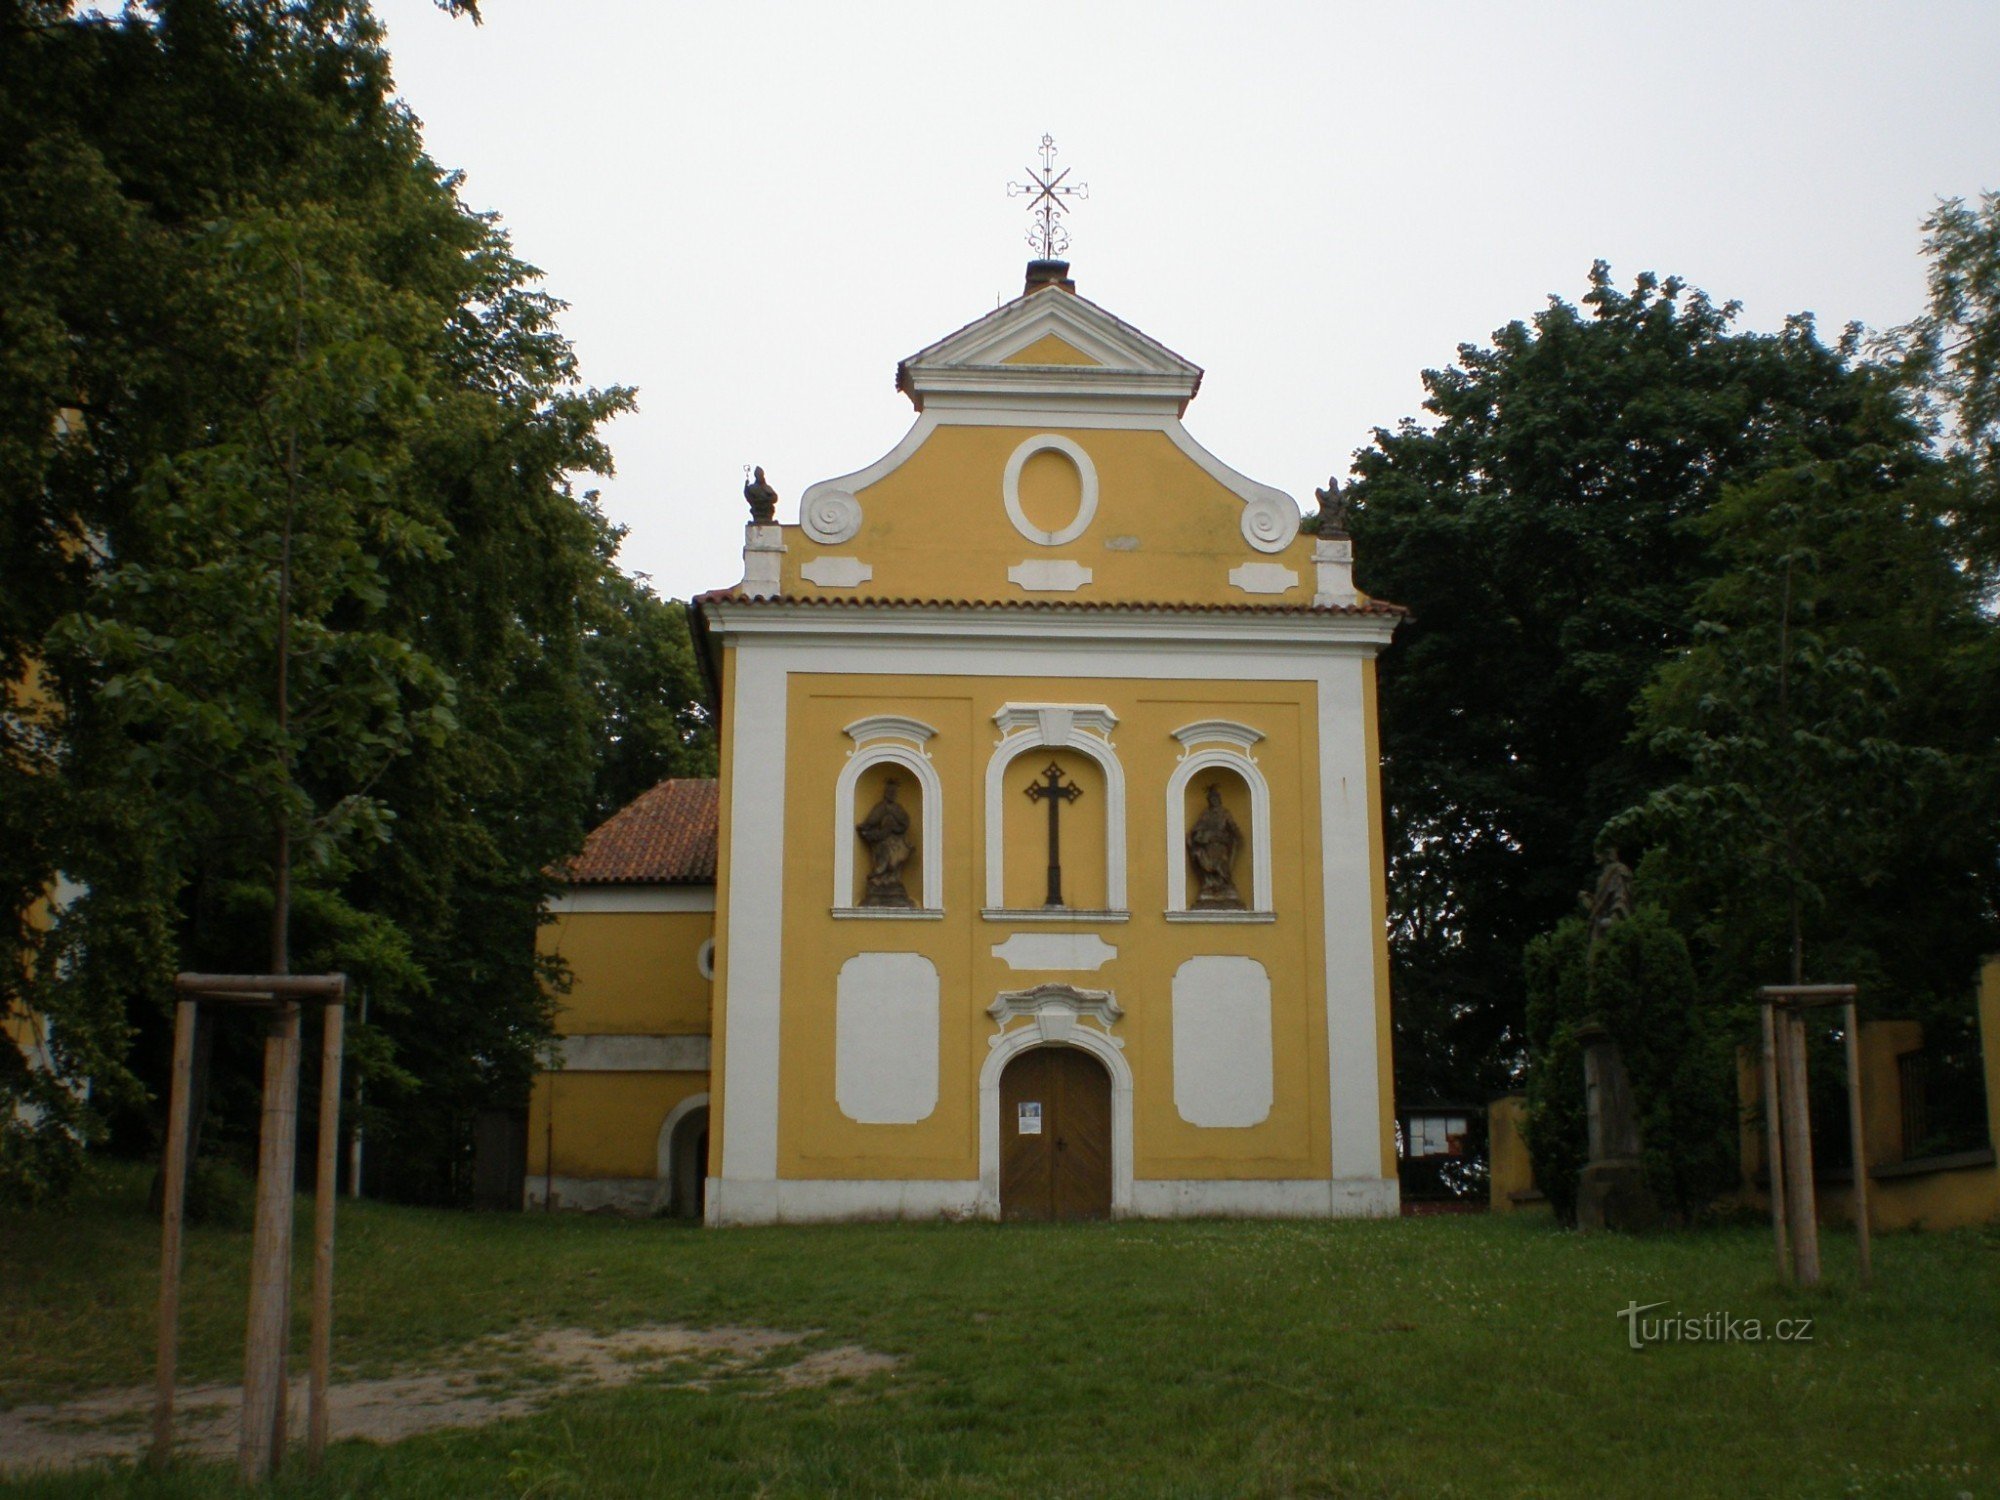 Йирны - церковь св. Питер